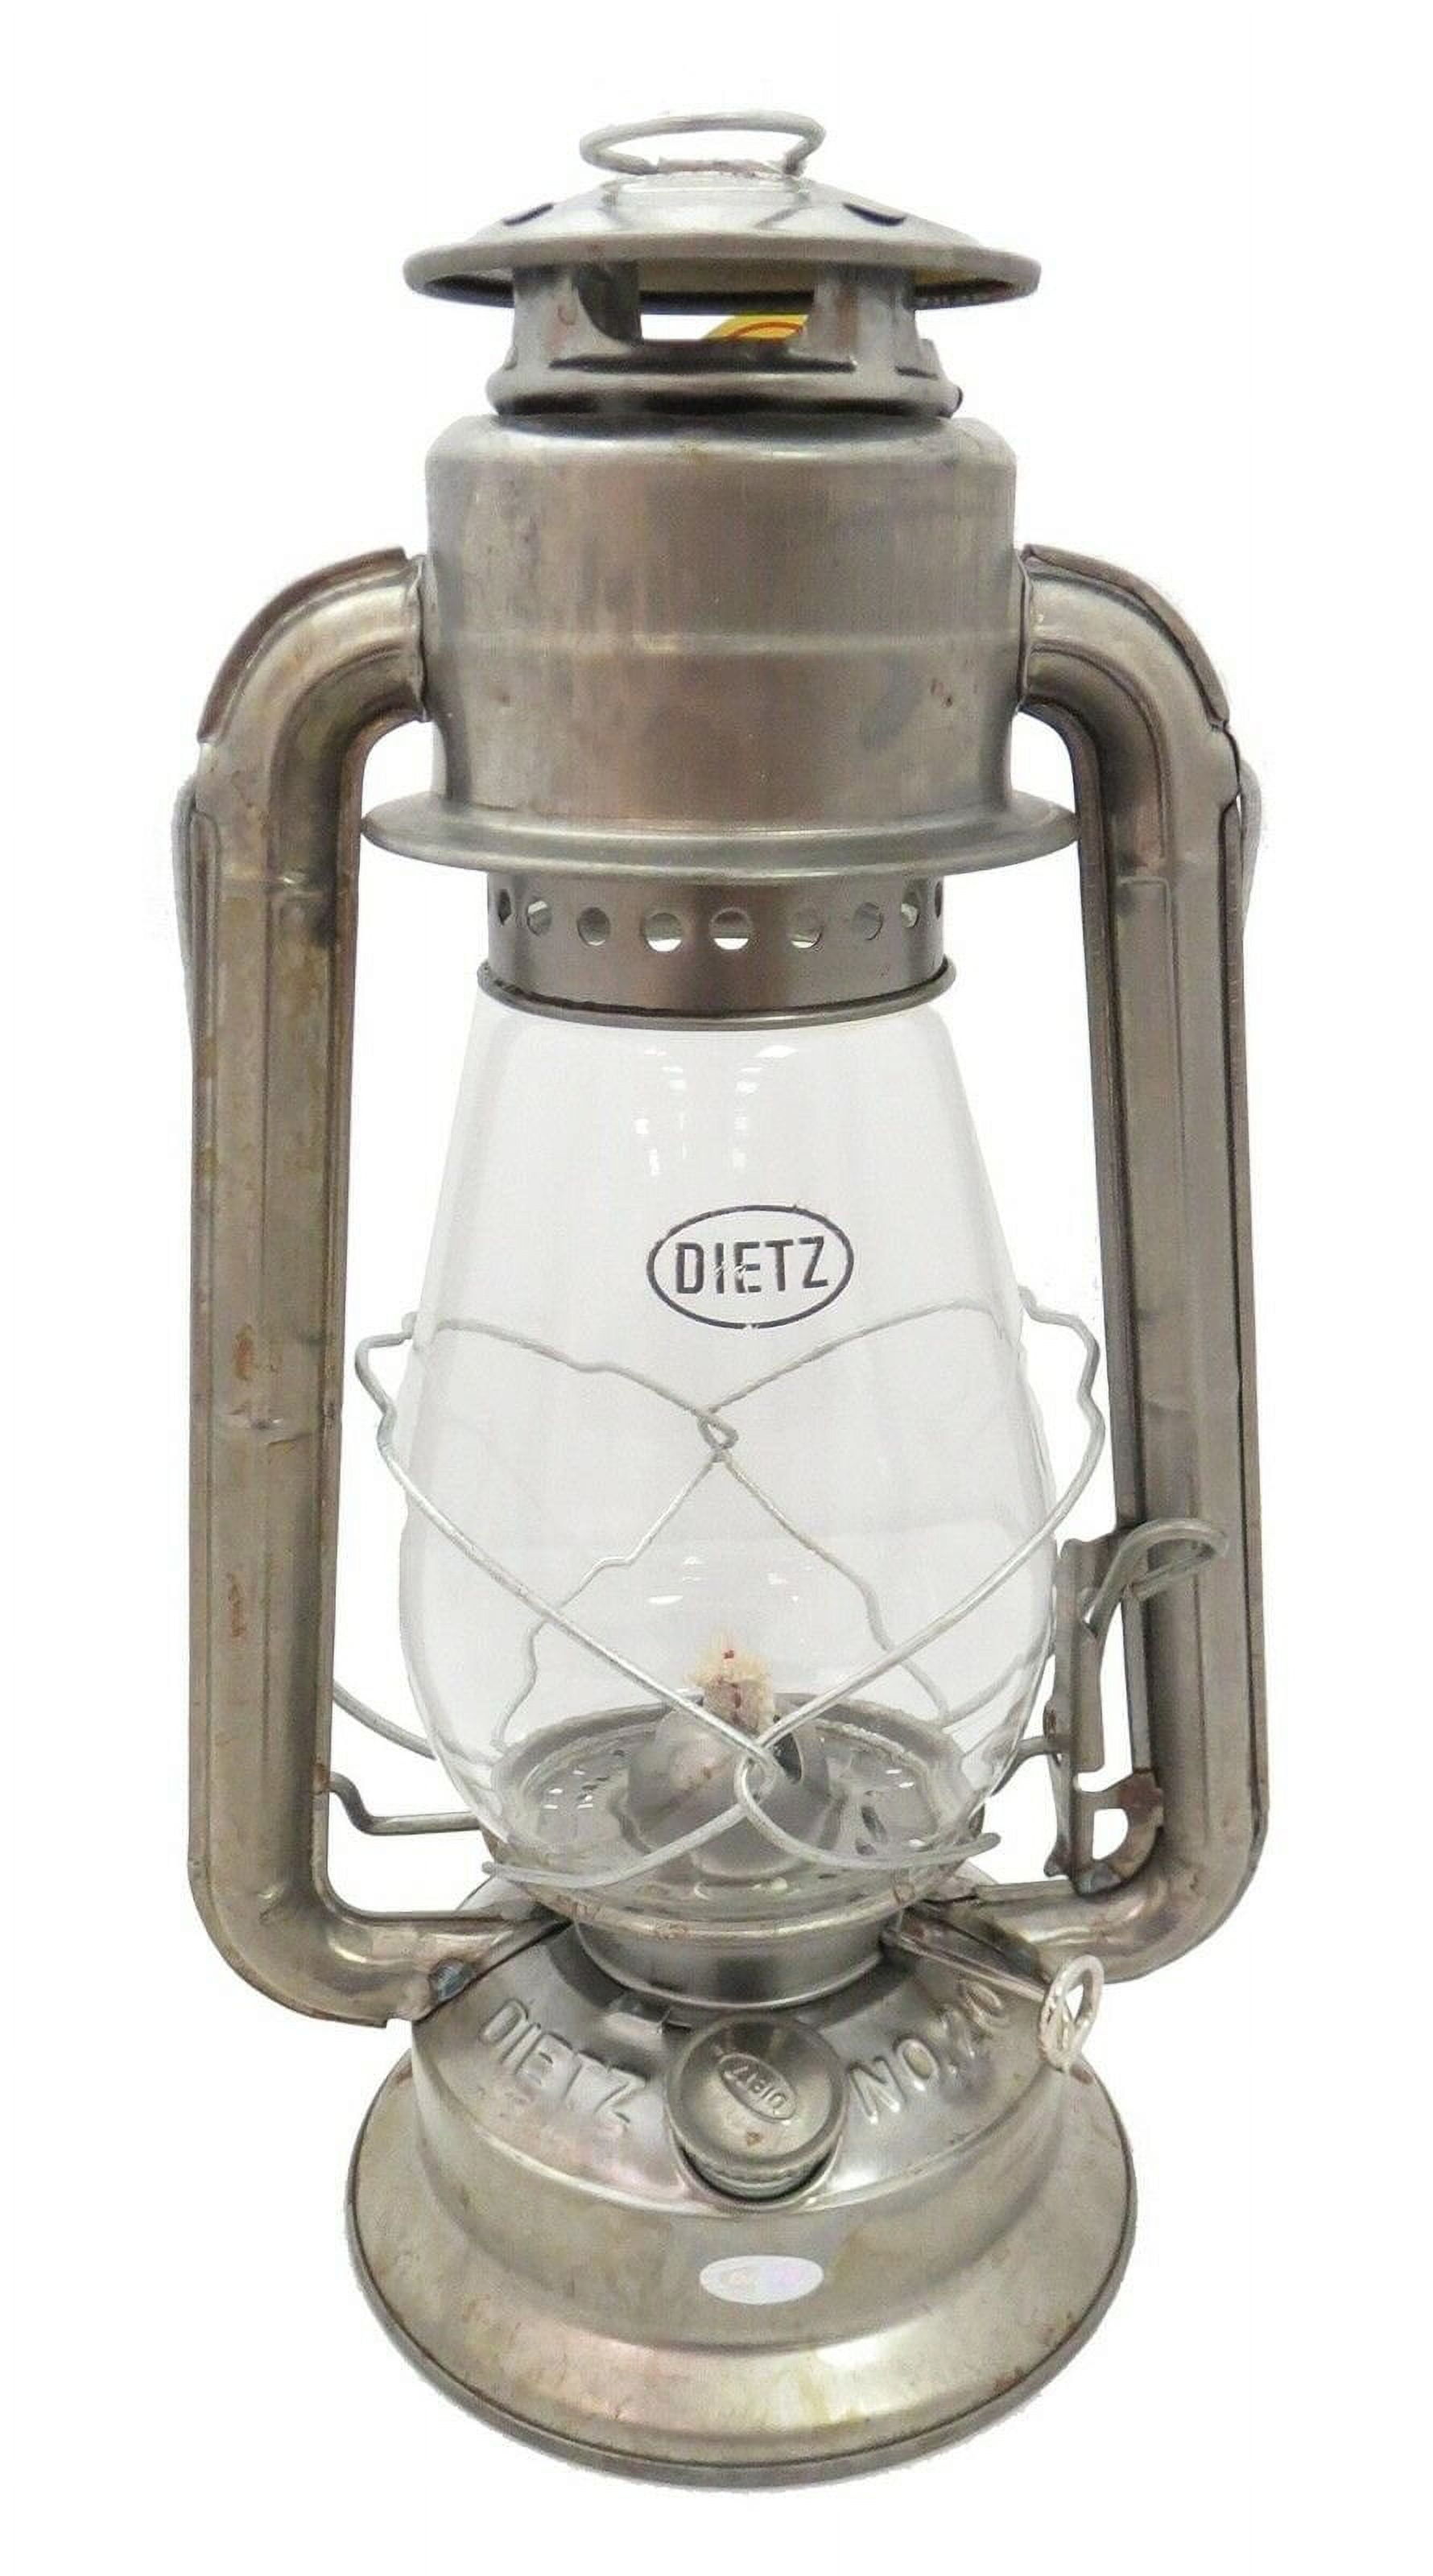 Dietz #20 Junior Oil Burning Lantern (Black with Gold) - Walmart.com